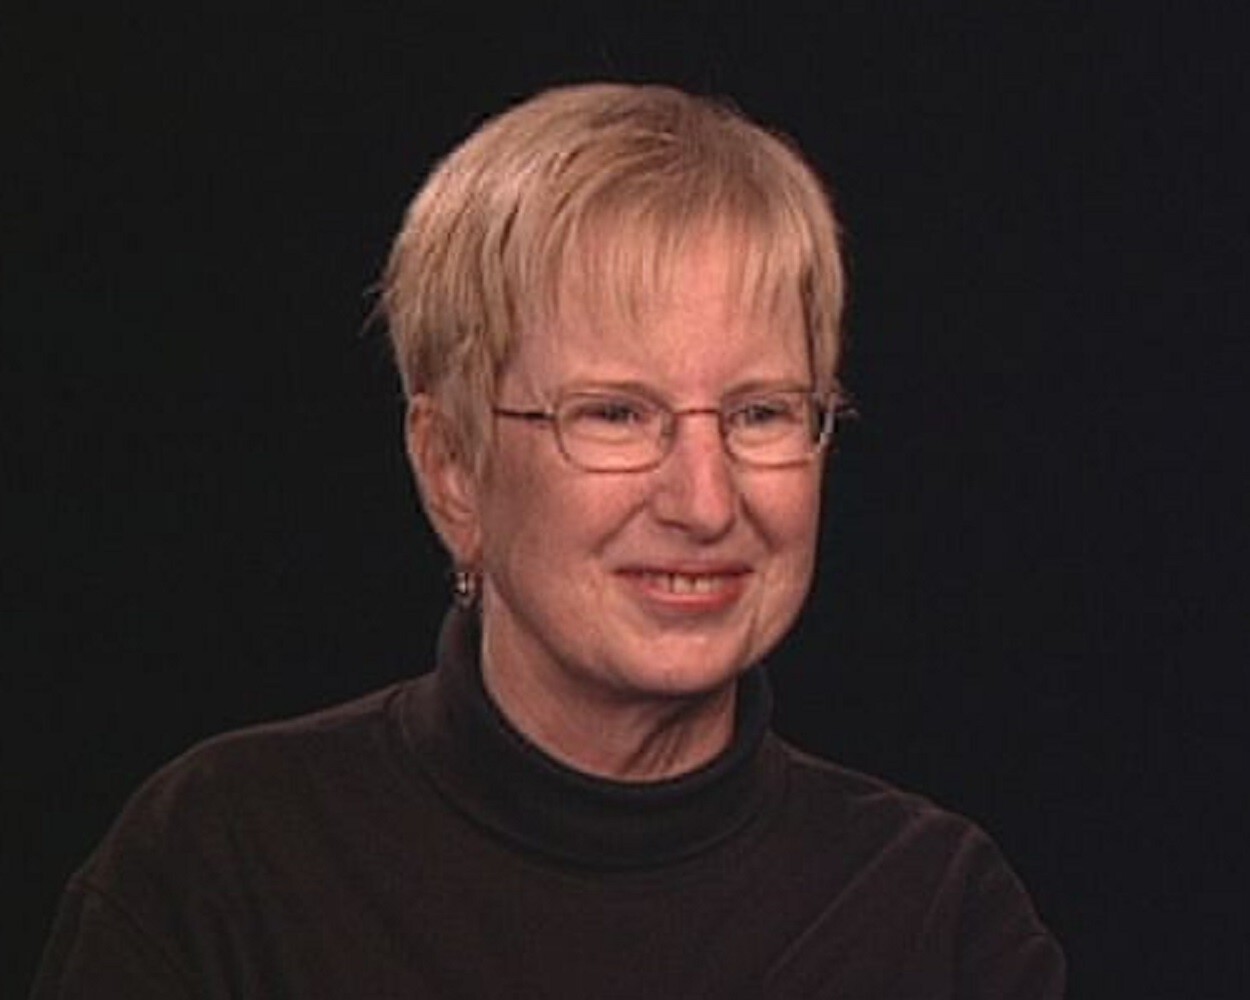 Martha Goddard, inventora del kit para recoger pruebas en caso de violación